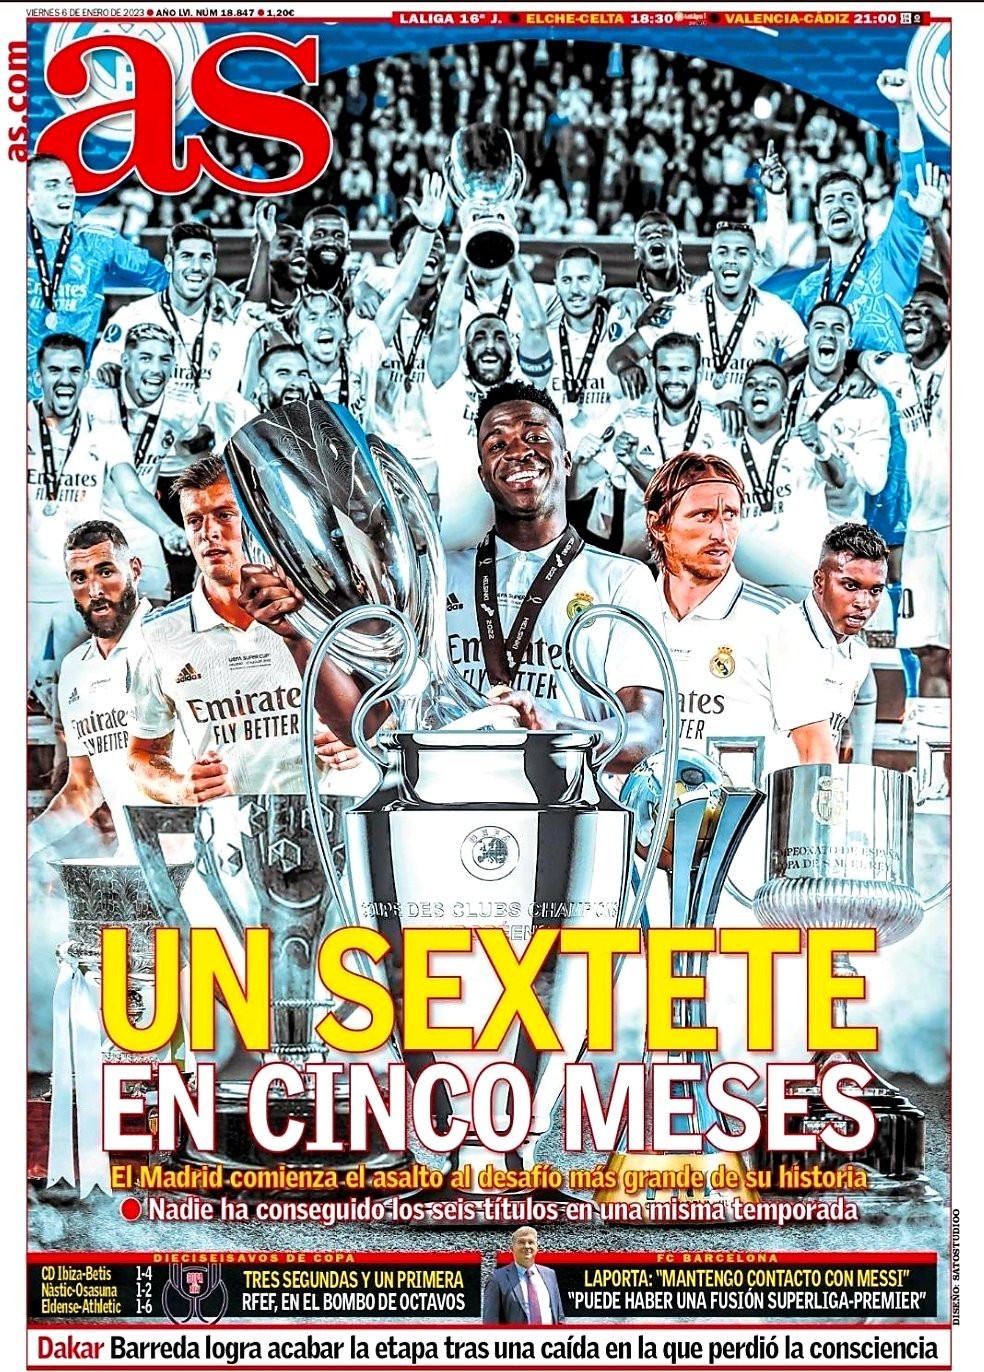 La portada del diario AS habla sobre el posible sextete del Real Madrid / REDES